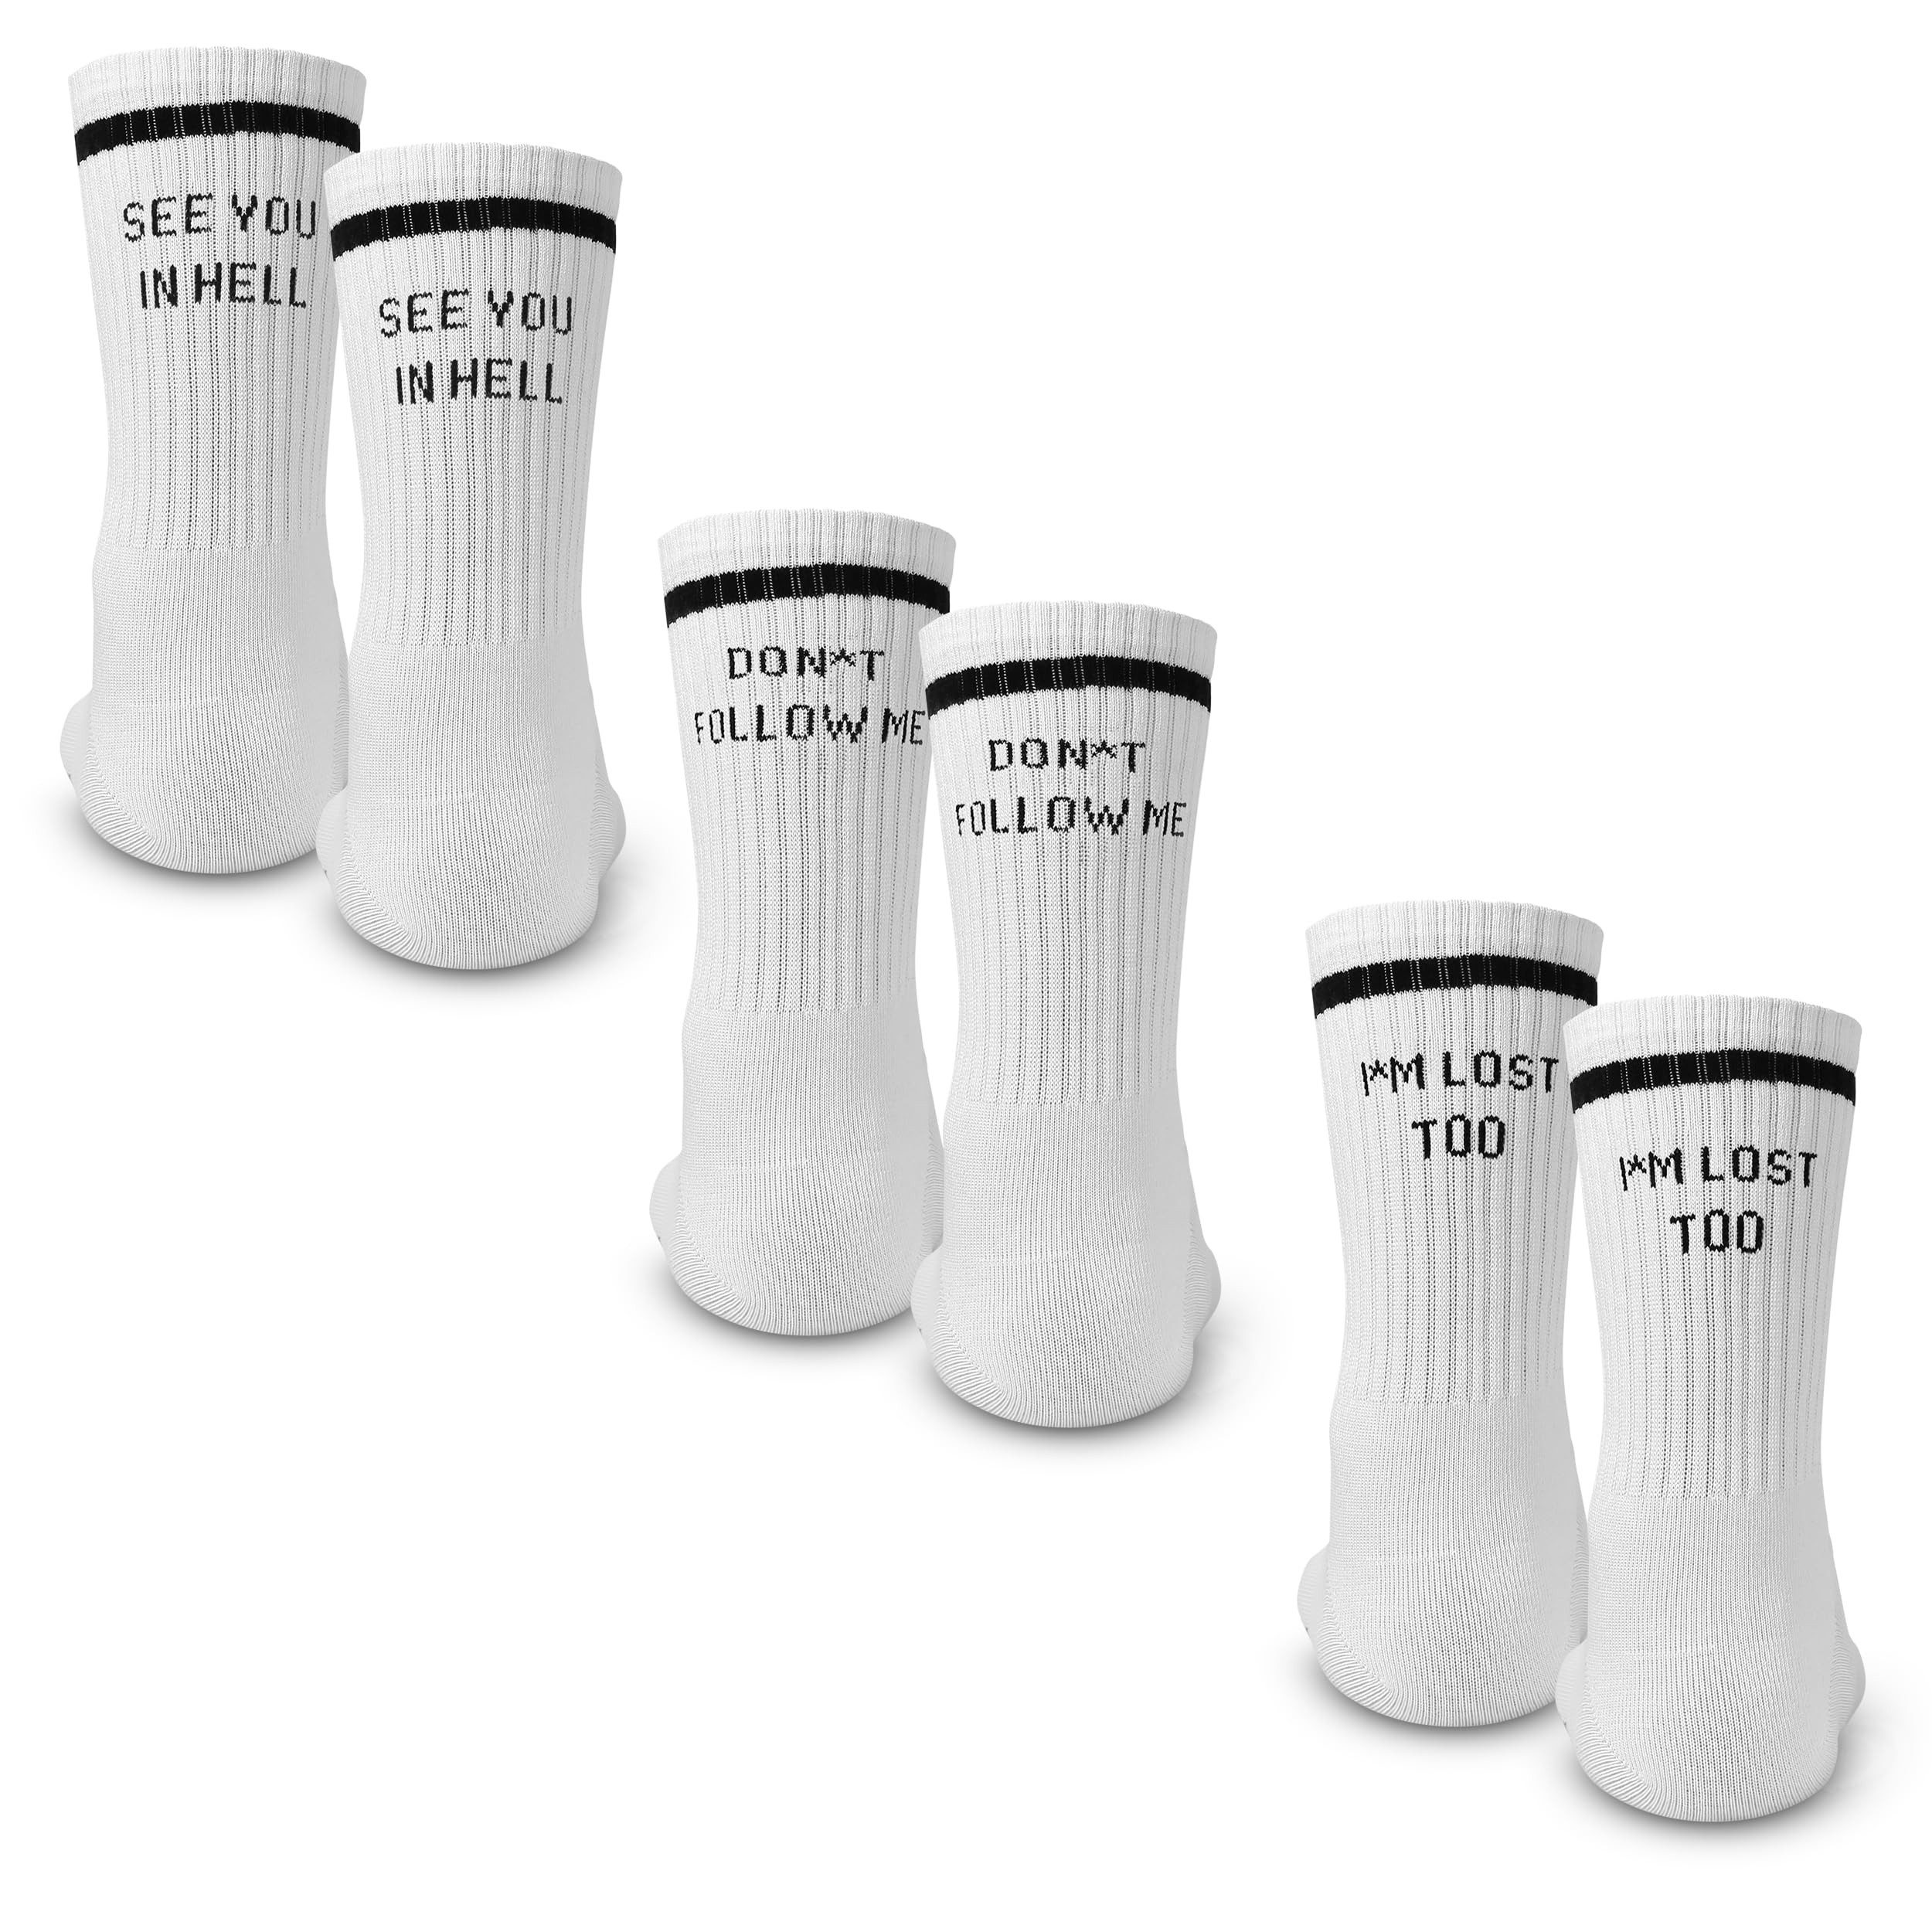 Made by Nami Socken Crew Socks 3-er Set aus Baumwolle, Herren & Damen (Set, 3er Set) Weiße Retro Tennis Socken mit Sprüchen, "Hell" "Follow" "Lost"